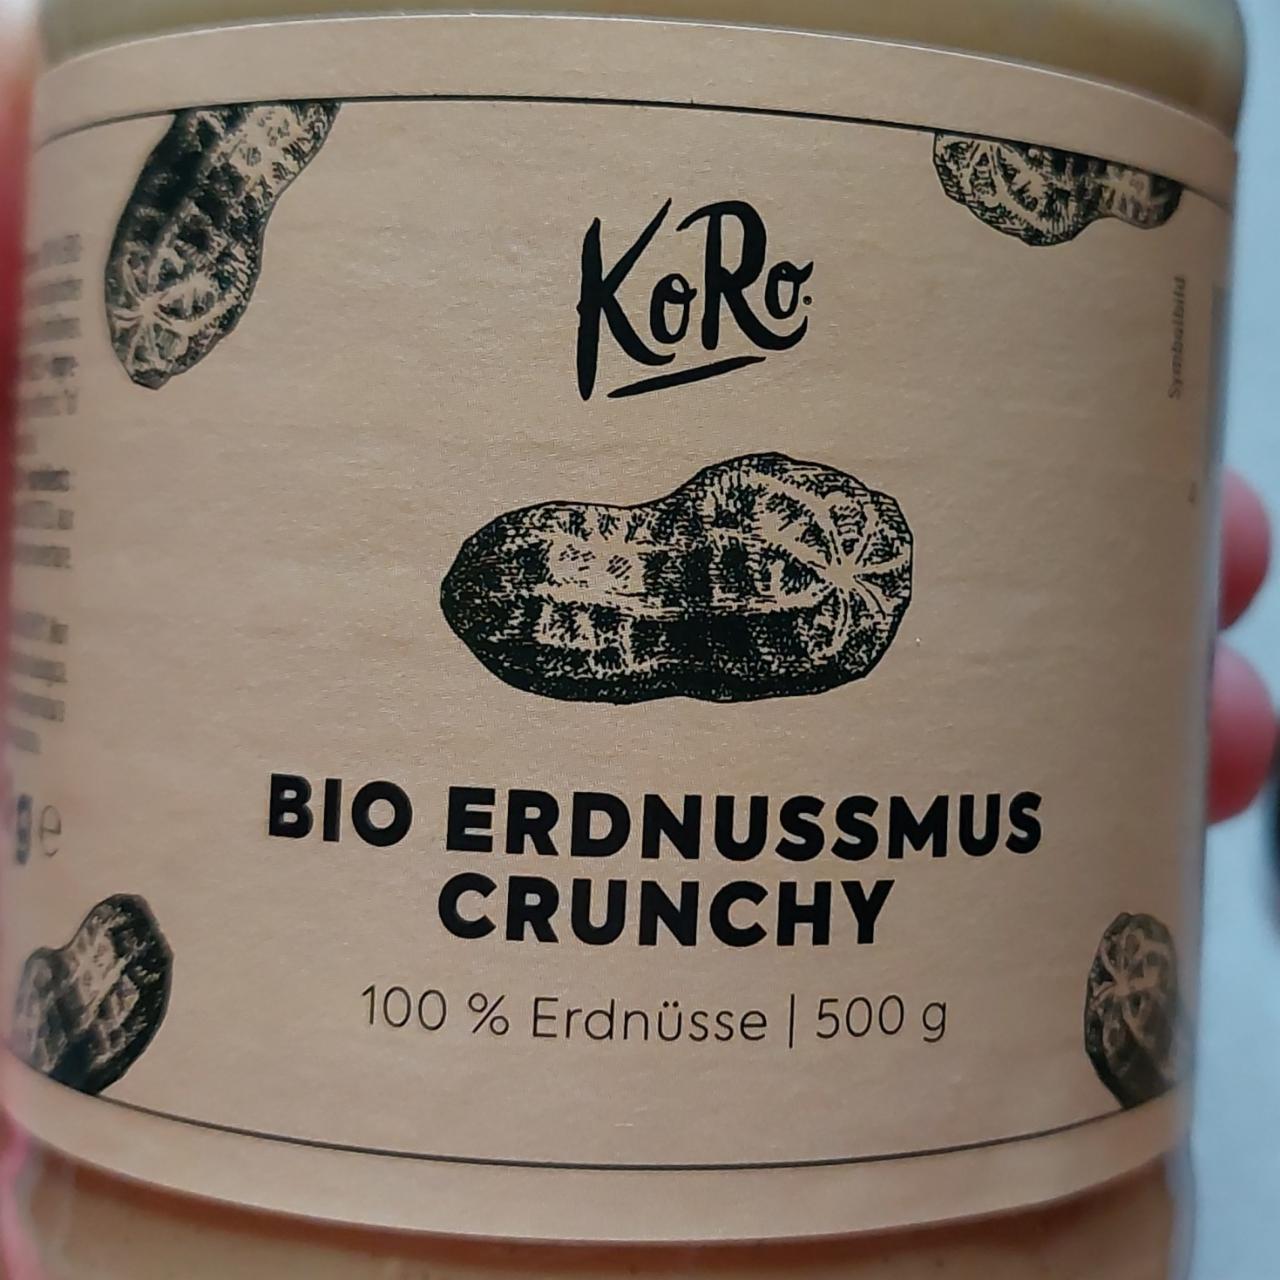 Фото - Паста арахисовая Bio Erdnussmus Crunchy KoRo